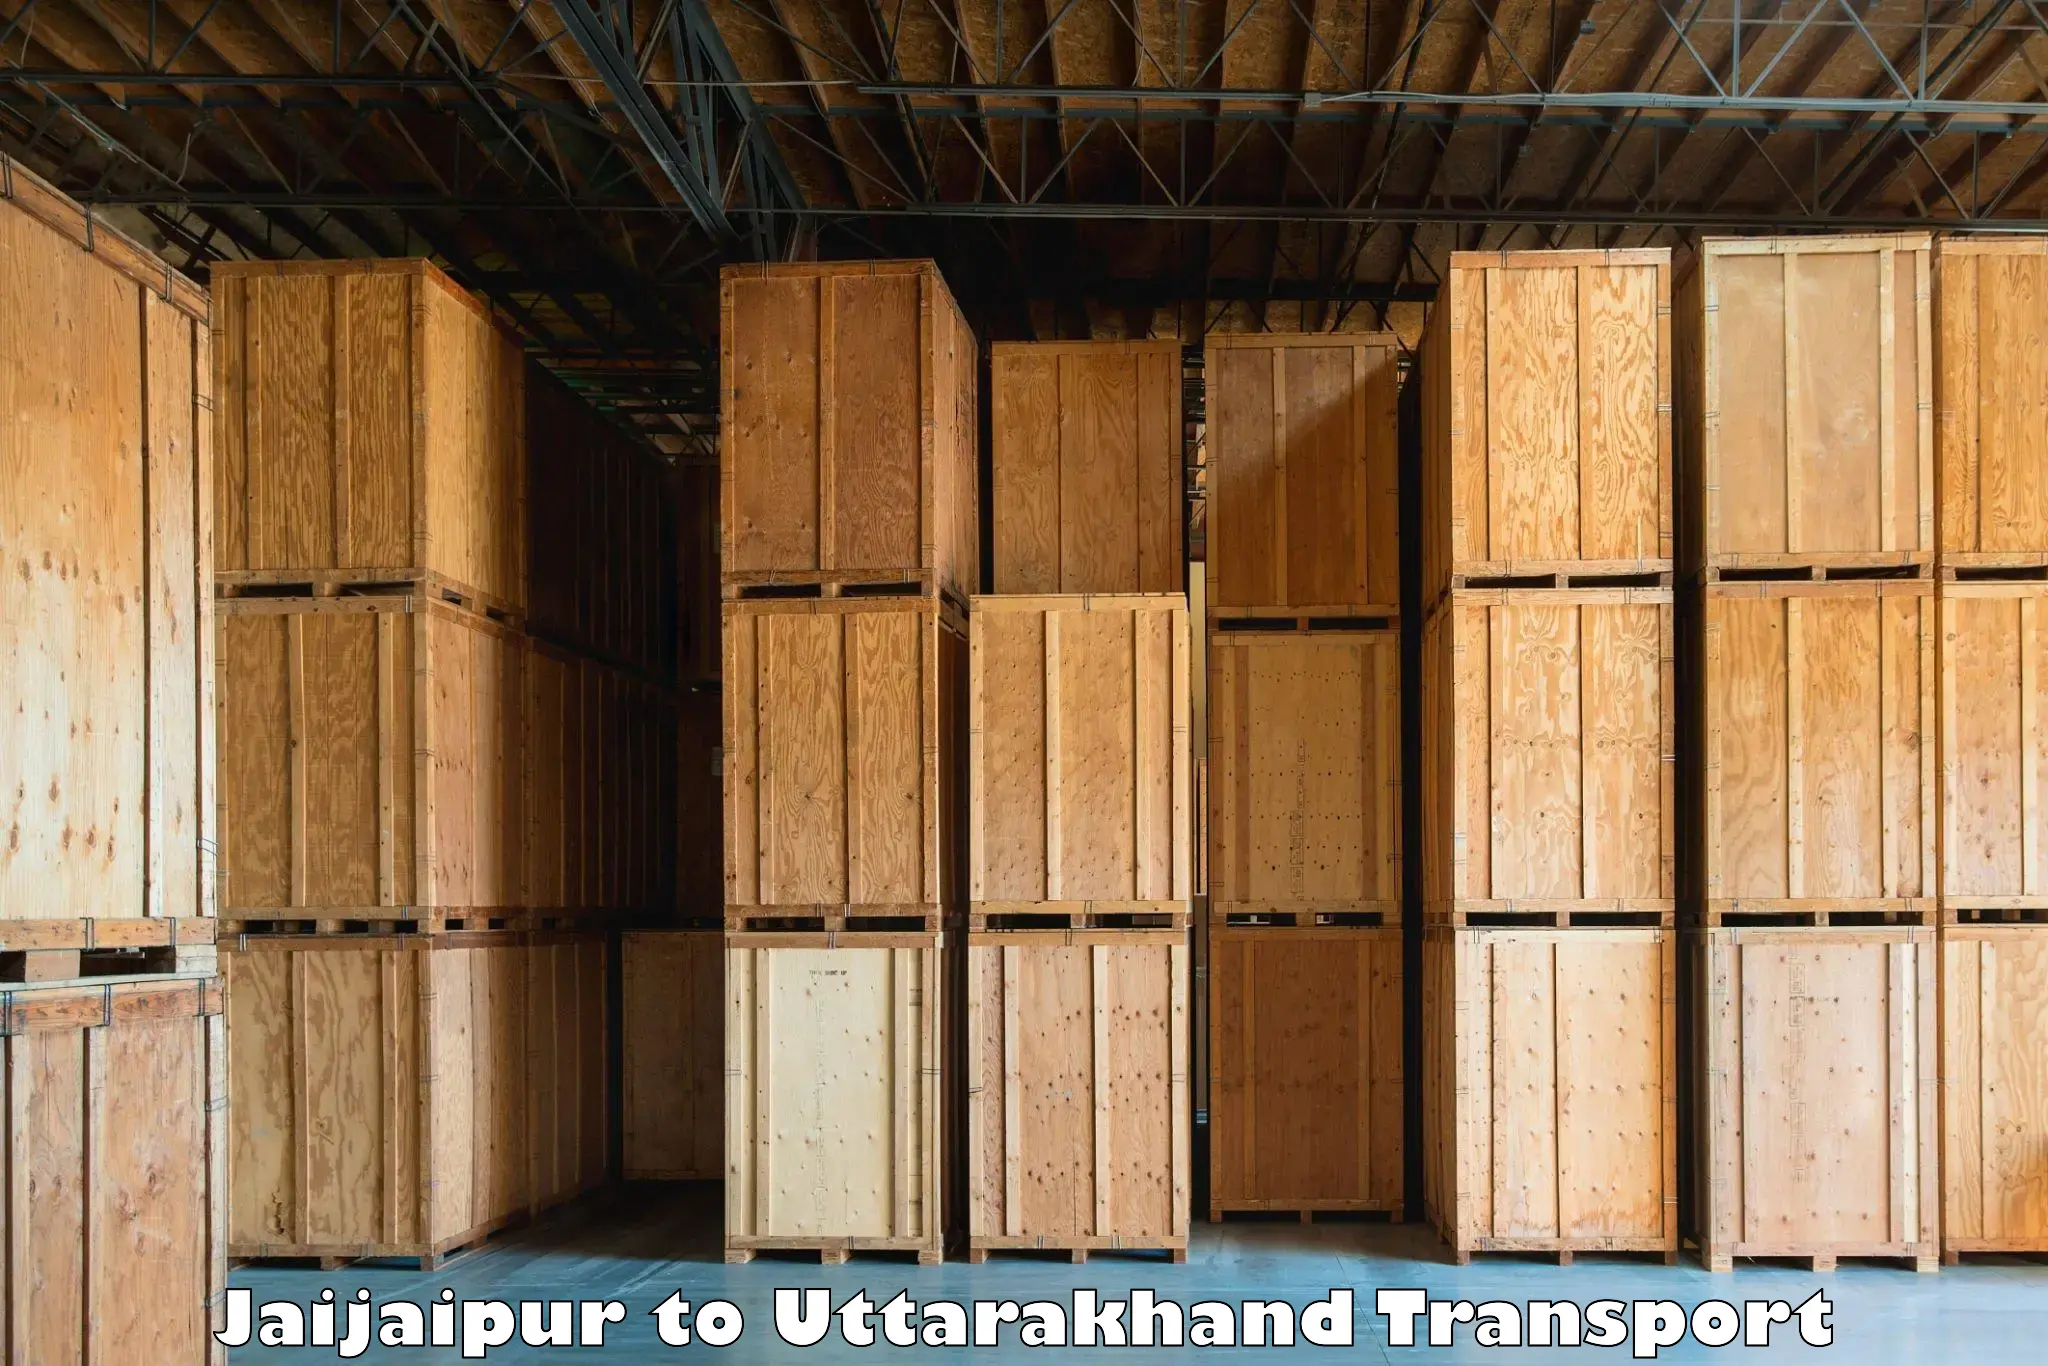 Luggage transport services Jaijaipur to Rishikesh